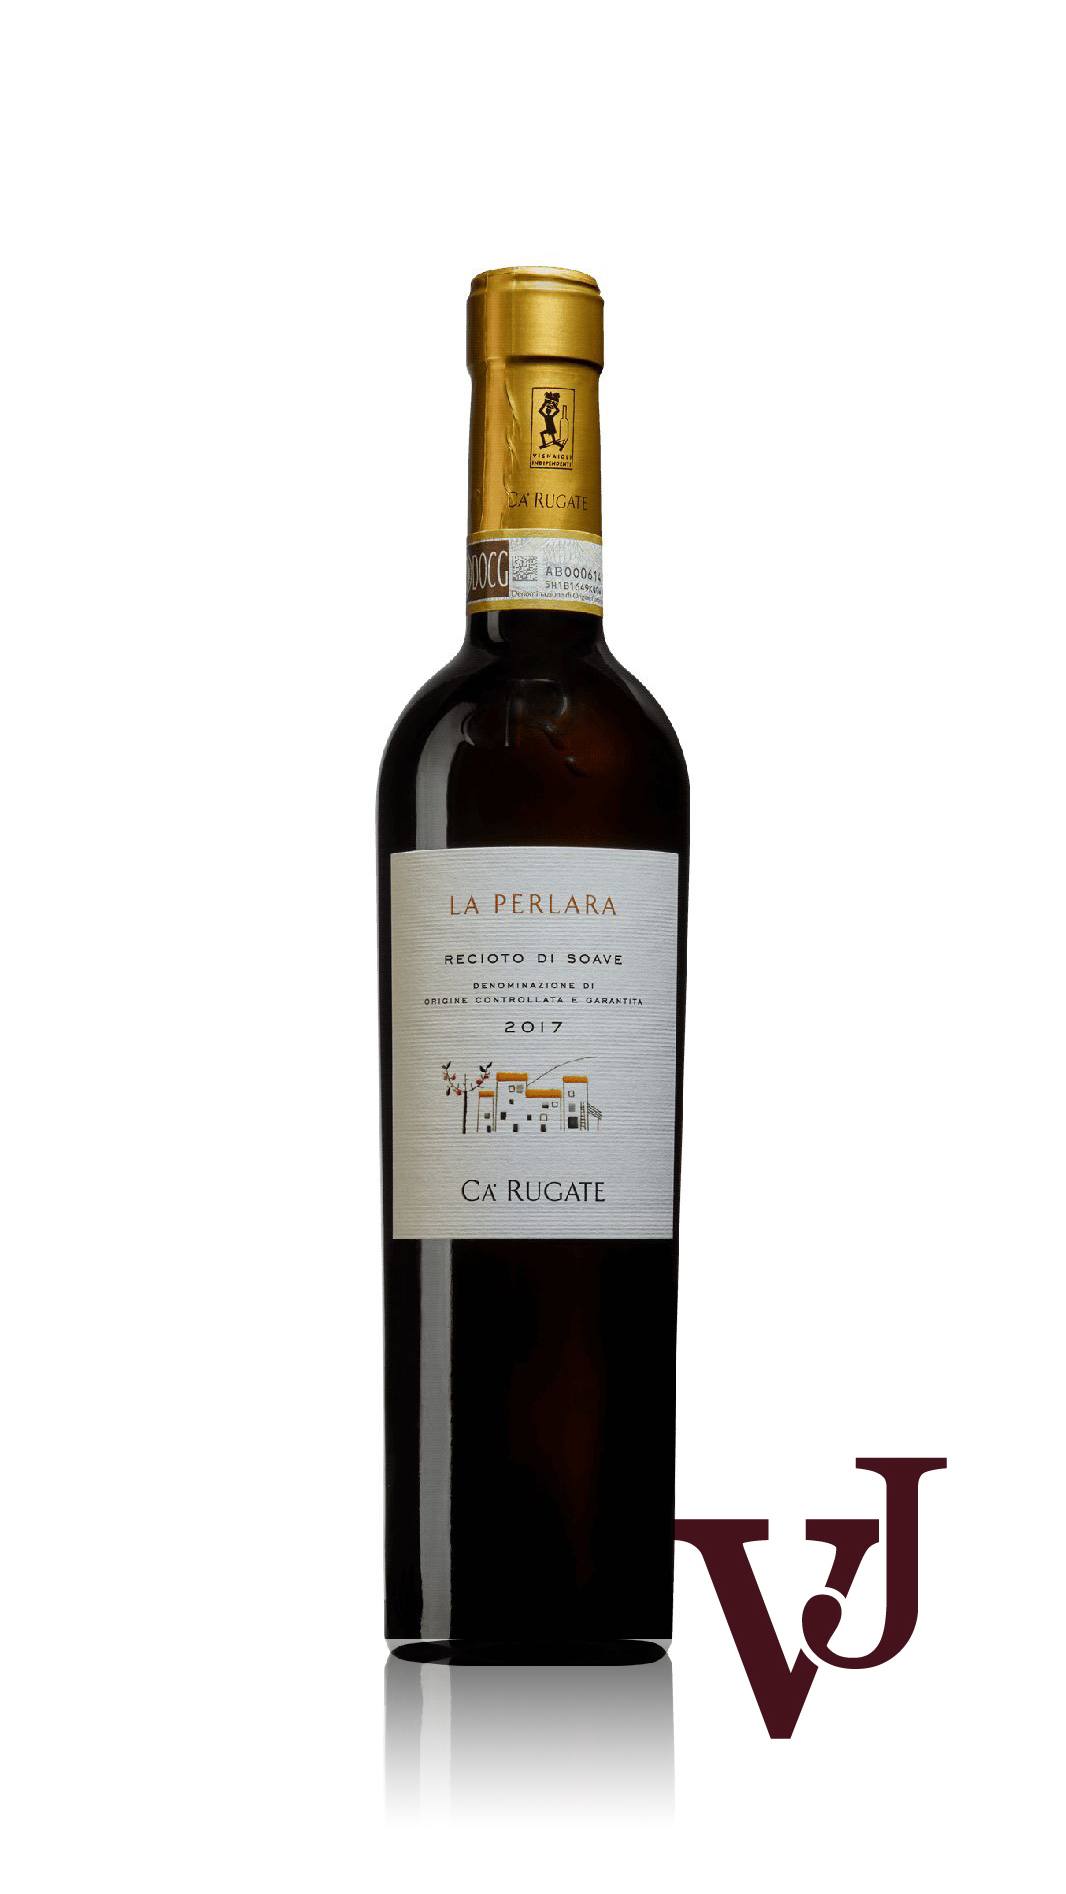 Övrigt vin - La Perlara Recioto di Soave artikel nummer 9219802 från producenten Ca'Rugate från området Italien